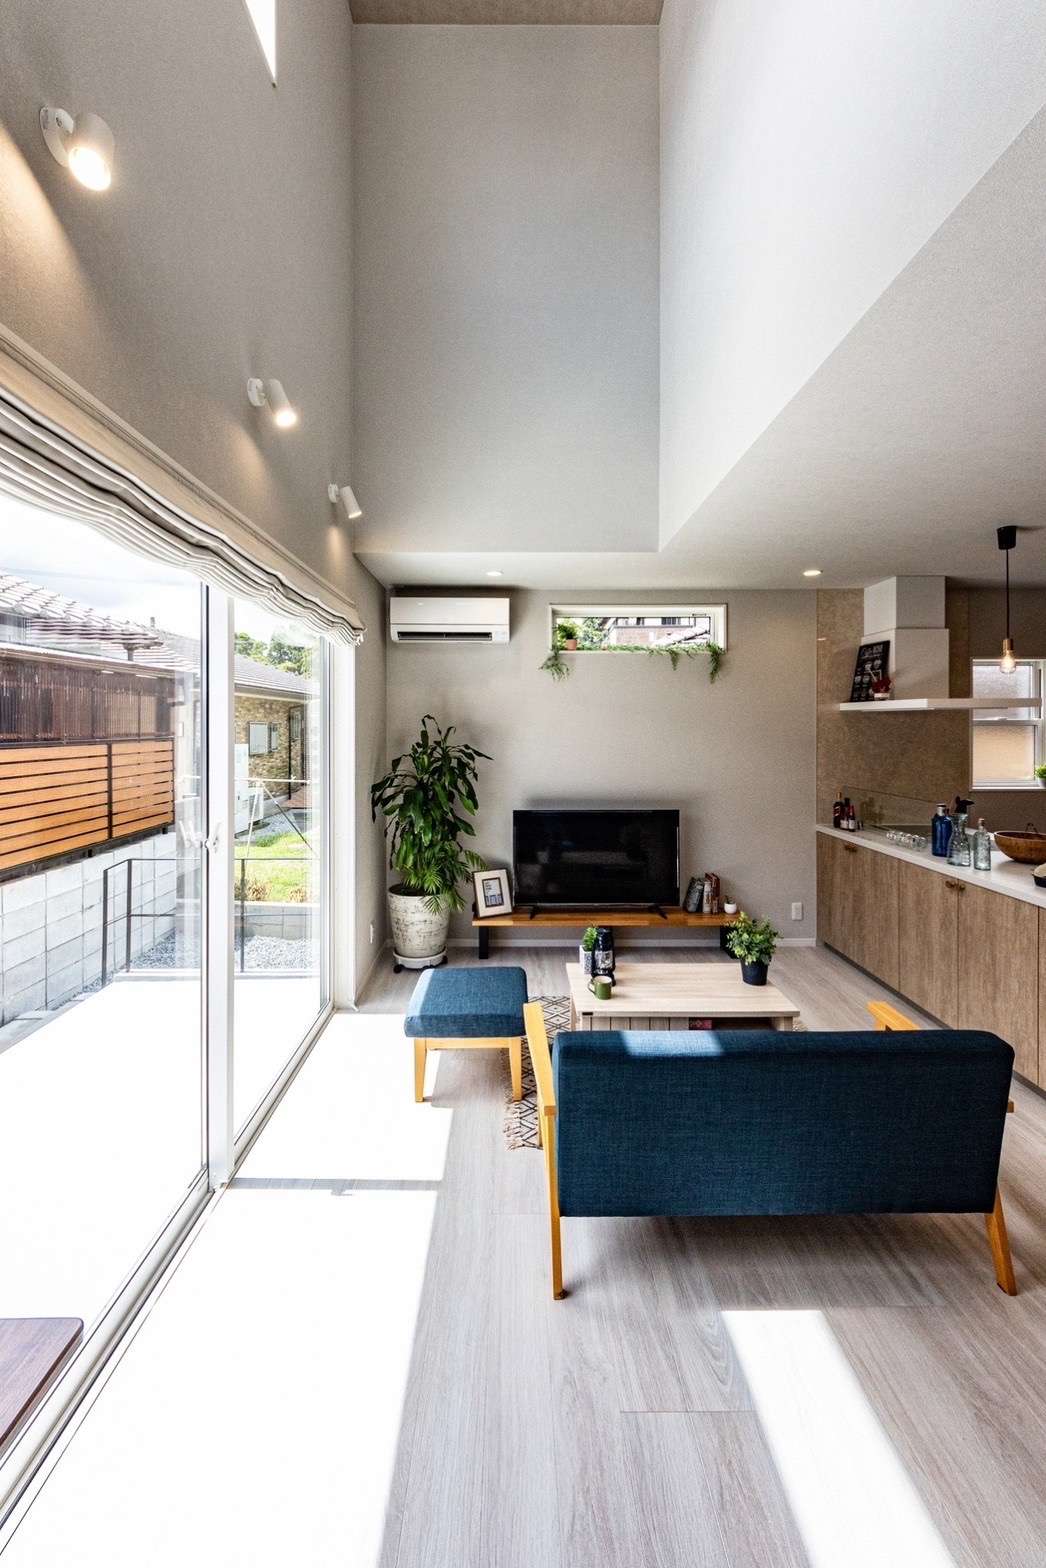 【ナチュラルで可愛い🏠💕吹き抜けのあるリビング&テラス】宮崎市で新築・リノベーション| mikiデザインハウス